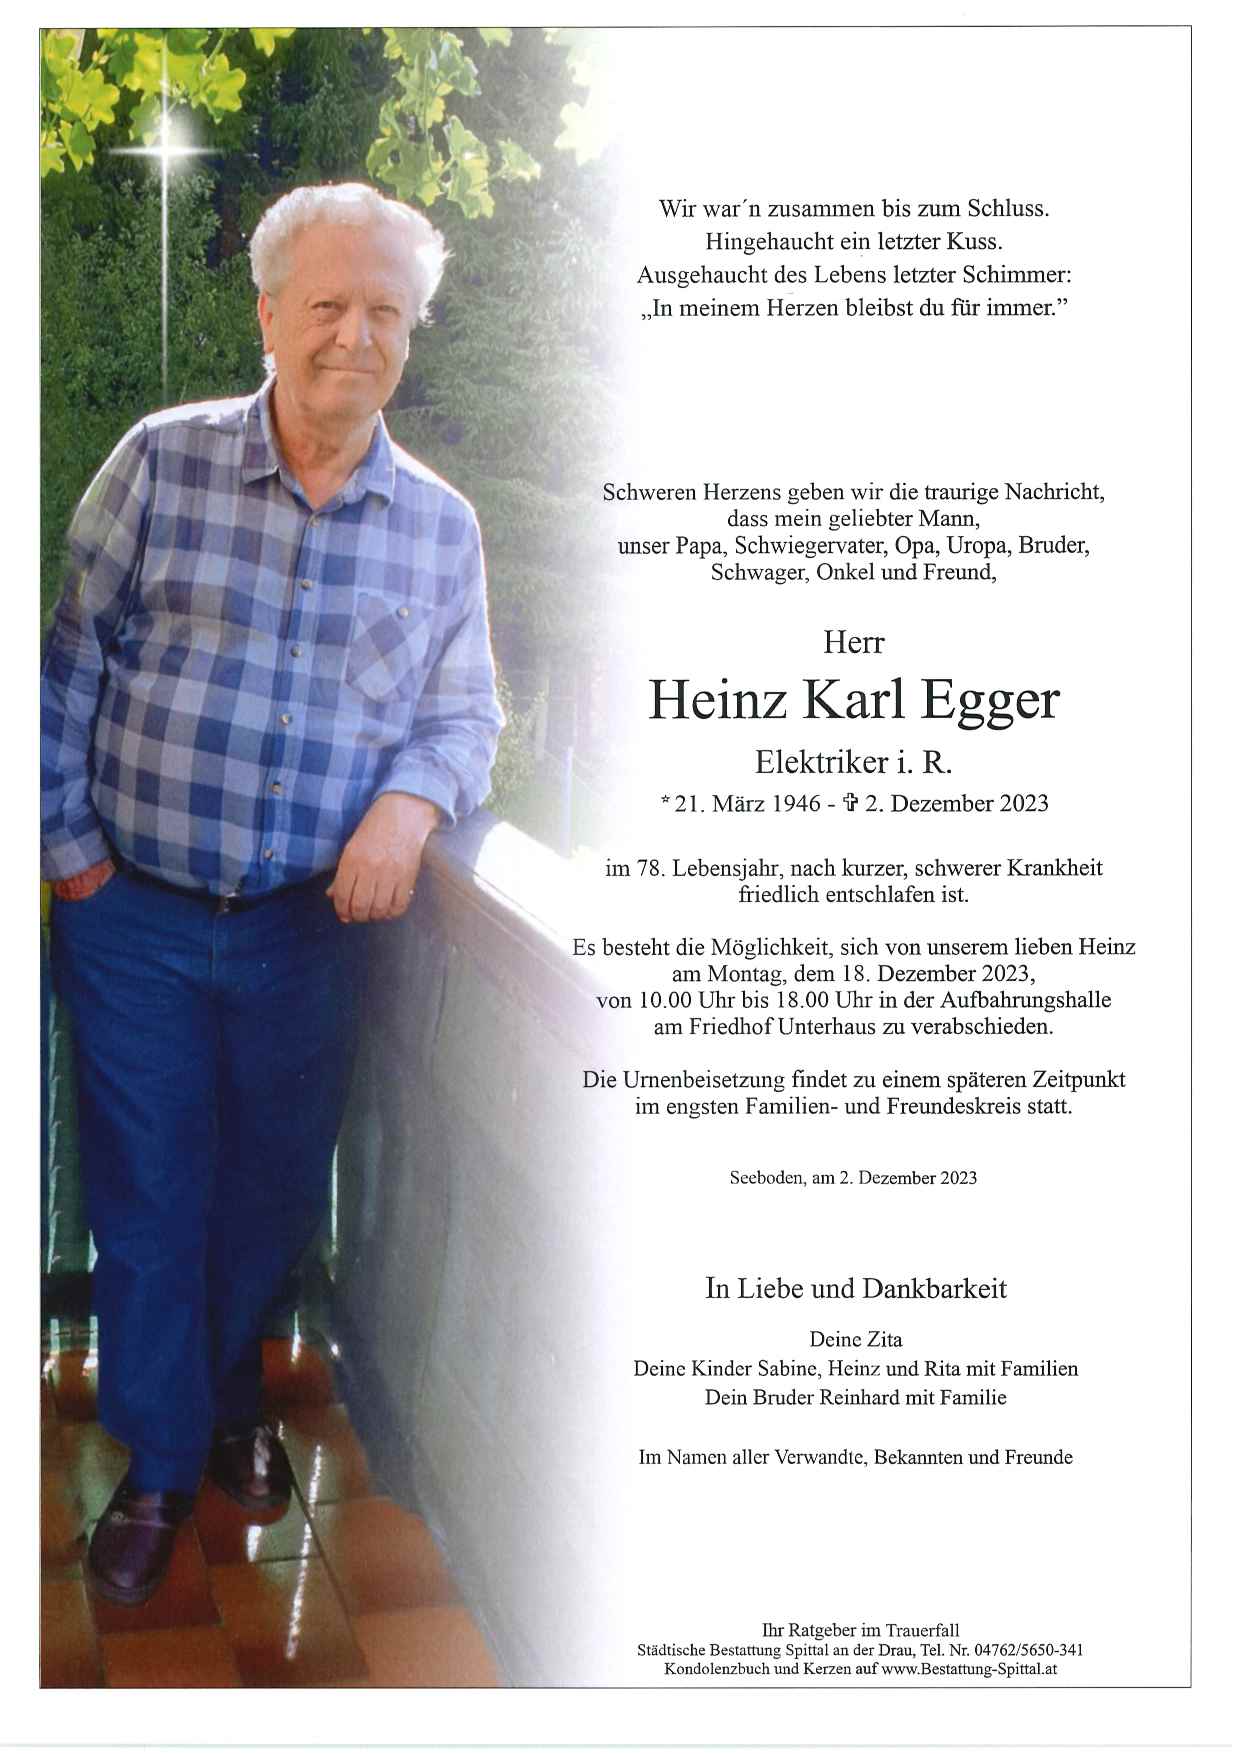 Egger Heinz Karl 